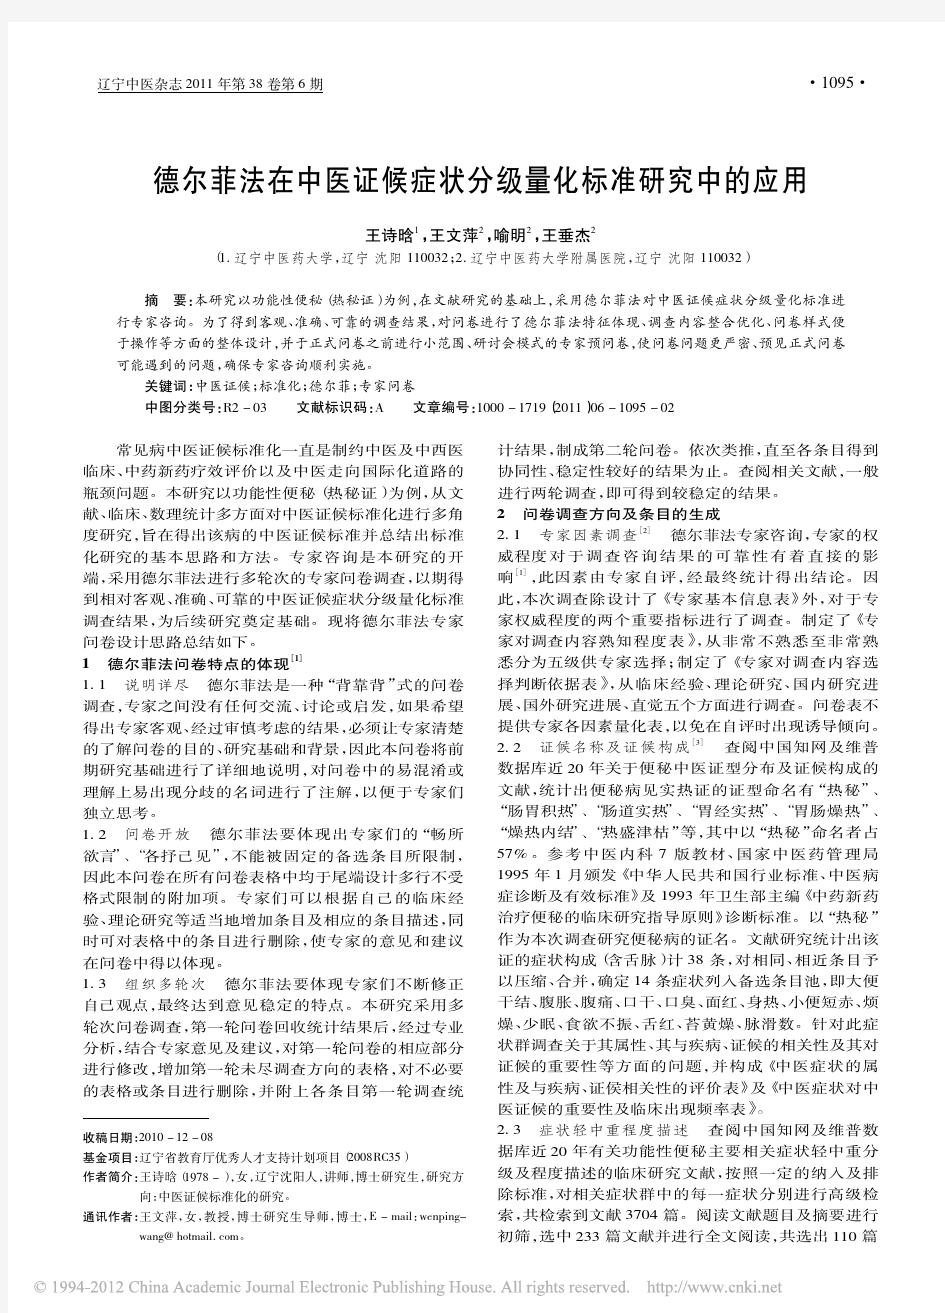 德尔菲法在中医证候症状分级量化标准研究中的应用_王诗晗